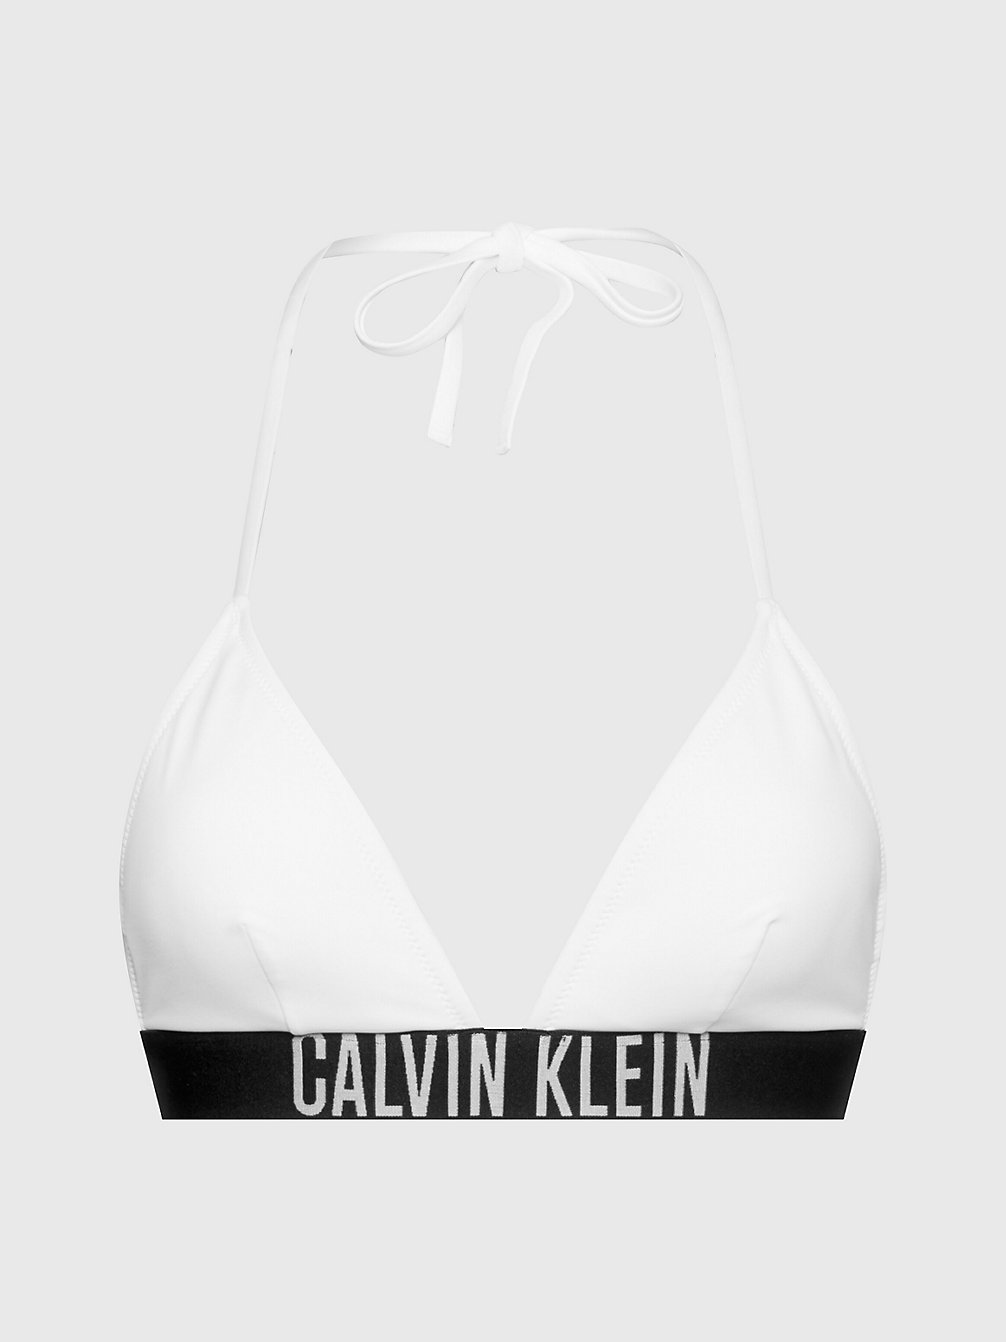 PVH CLASSIC WHITE > Triangel Bikinitop - Intense Power > undefined dames - Calvin Klein